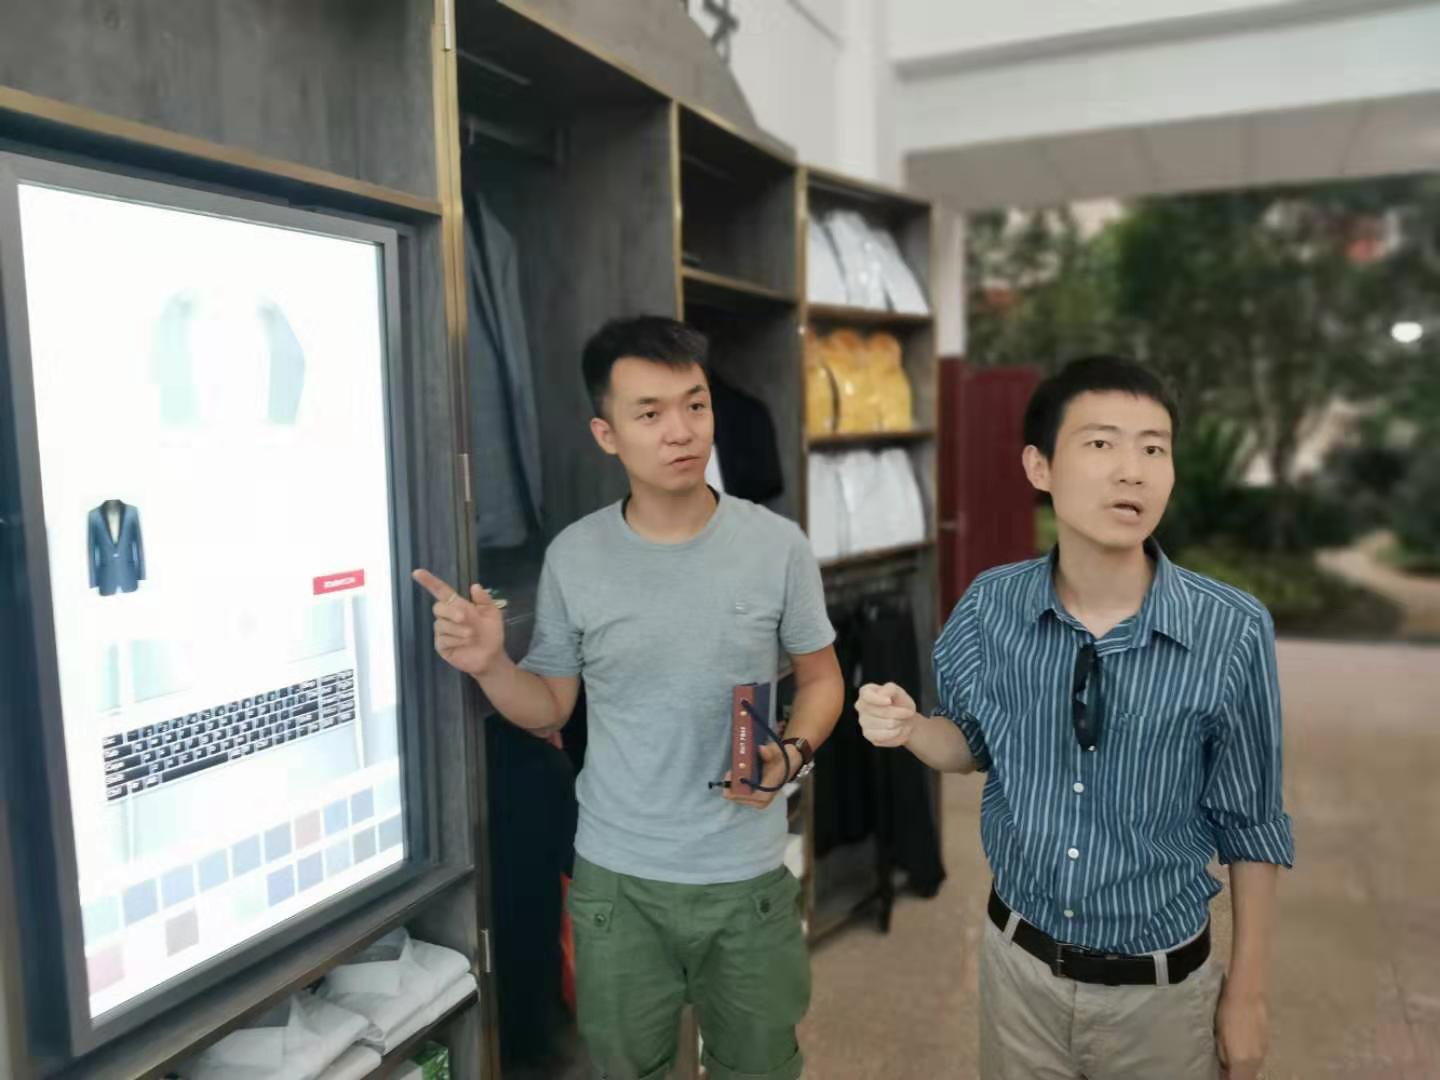 生物机电职院植科院青年教师管昕和唐志伟正在讲解智能衣柜操作。长沙晚报记者 王斌 摄